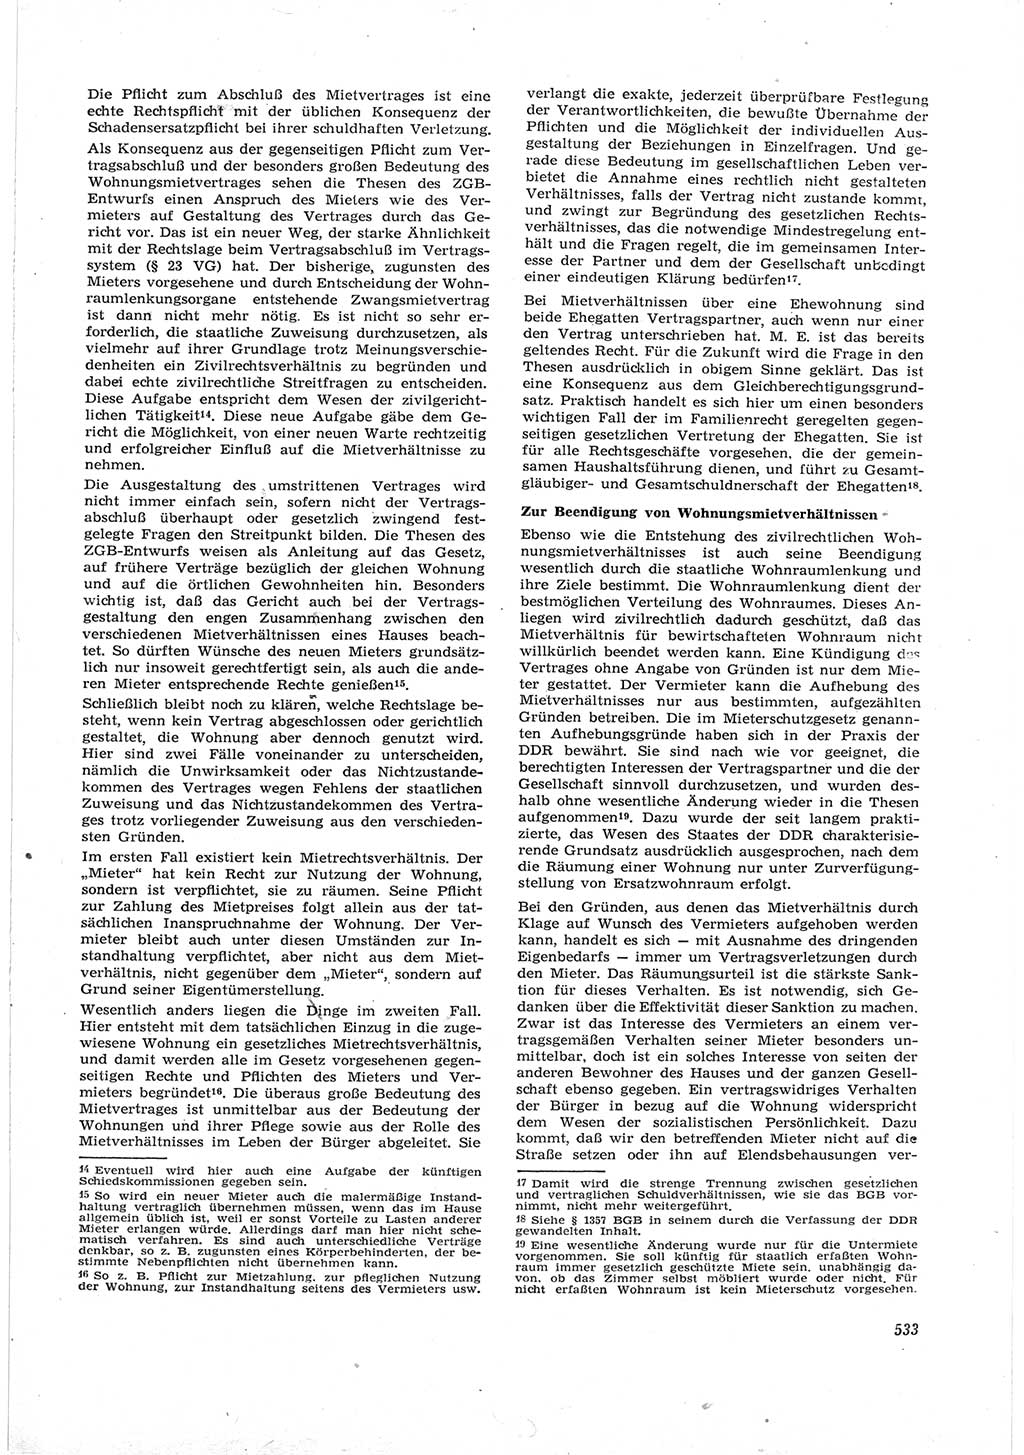 Neue Justiz (NJ), Zeitschrift für Recht und Rechtswissenschaft [Deutsche Demokratische Republik (DDR)], 17. Jahrgang 1963, Seite 533 (NJ DDR 1963, S. 533)